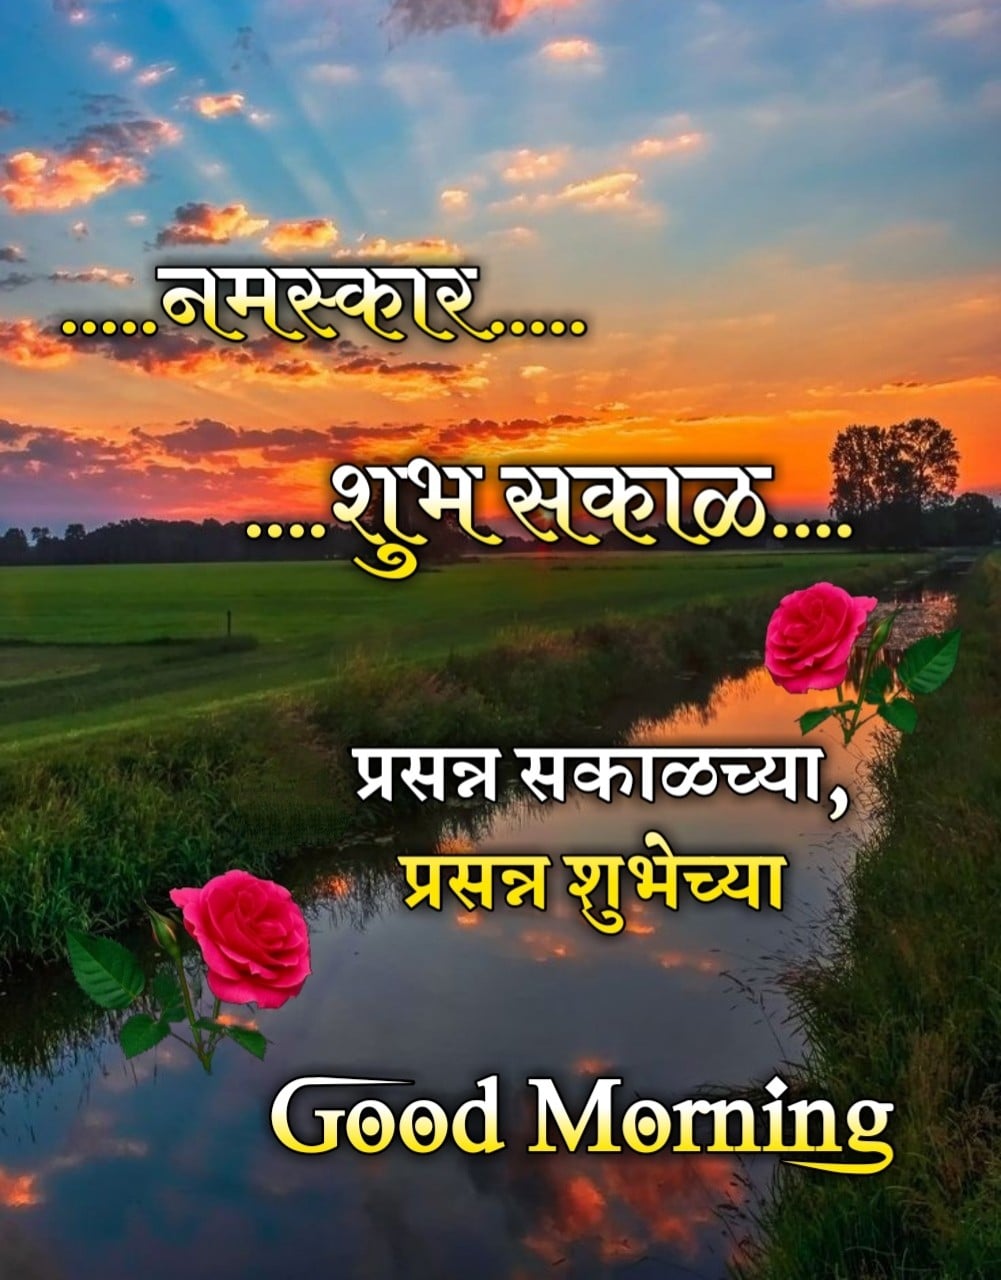 Shubh Sakal Nature Images, Meaningful Nature Good Morning Marathi